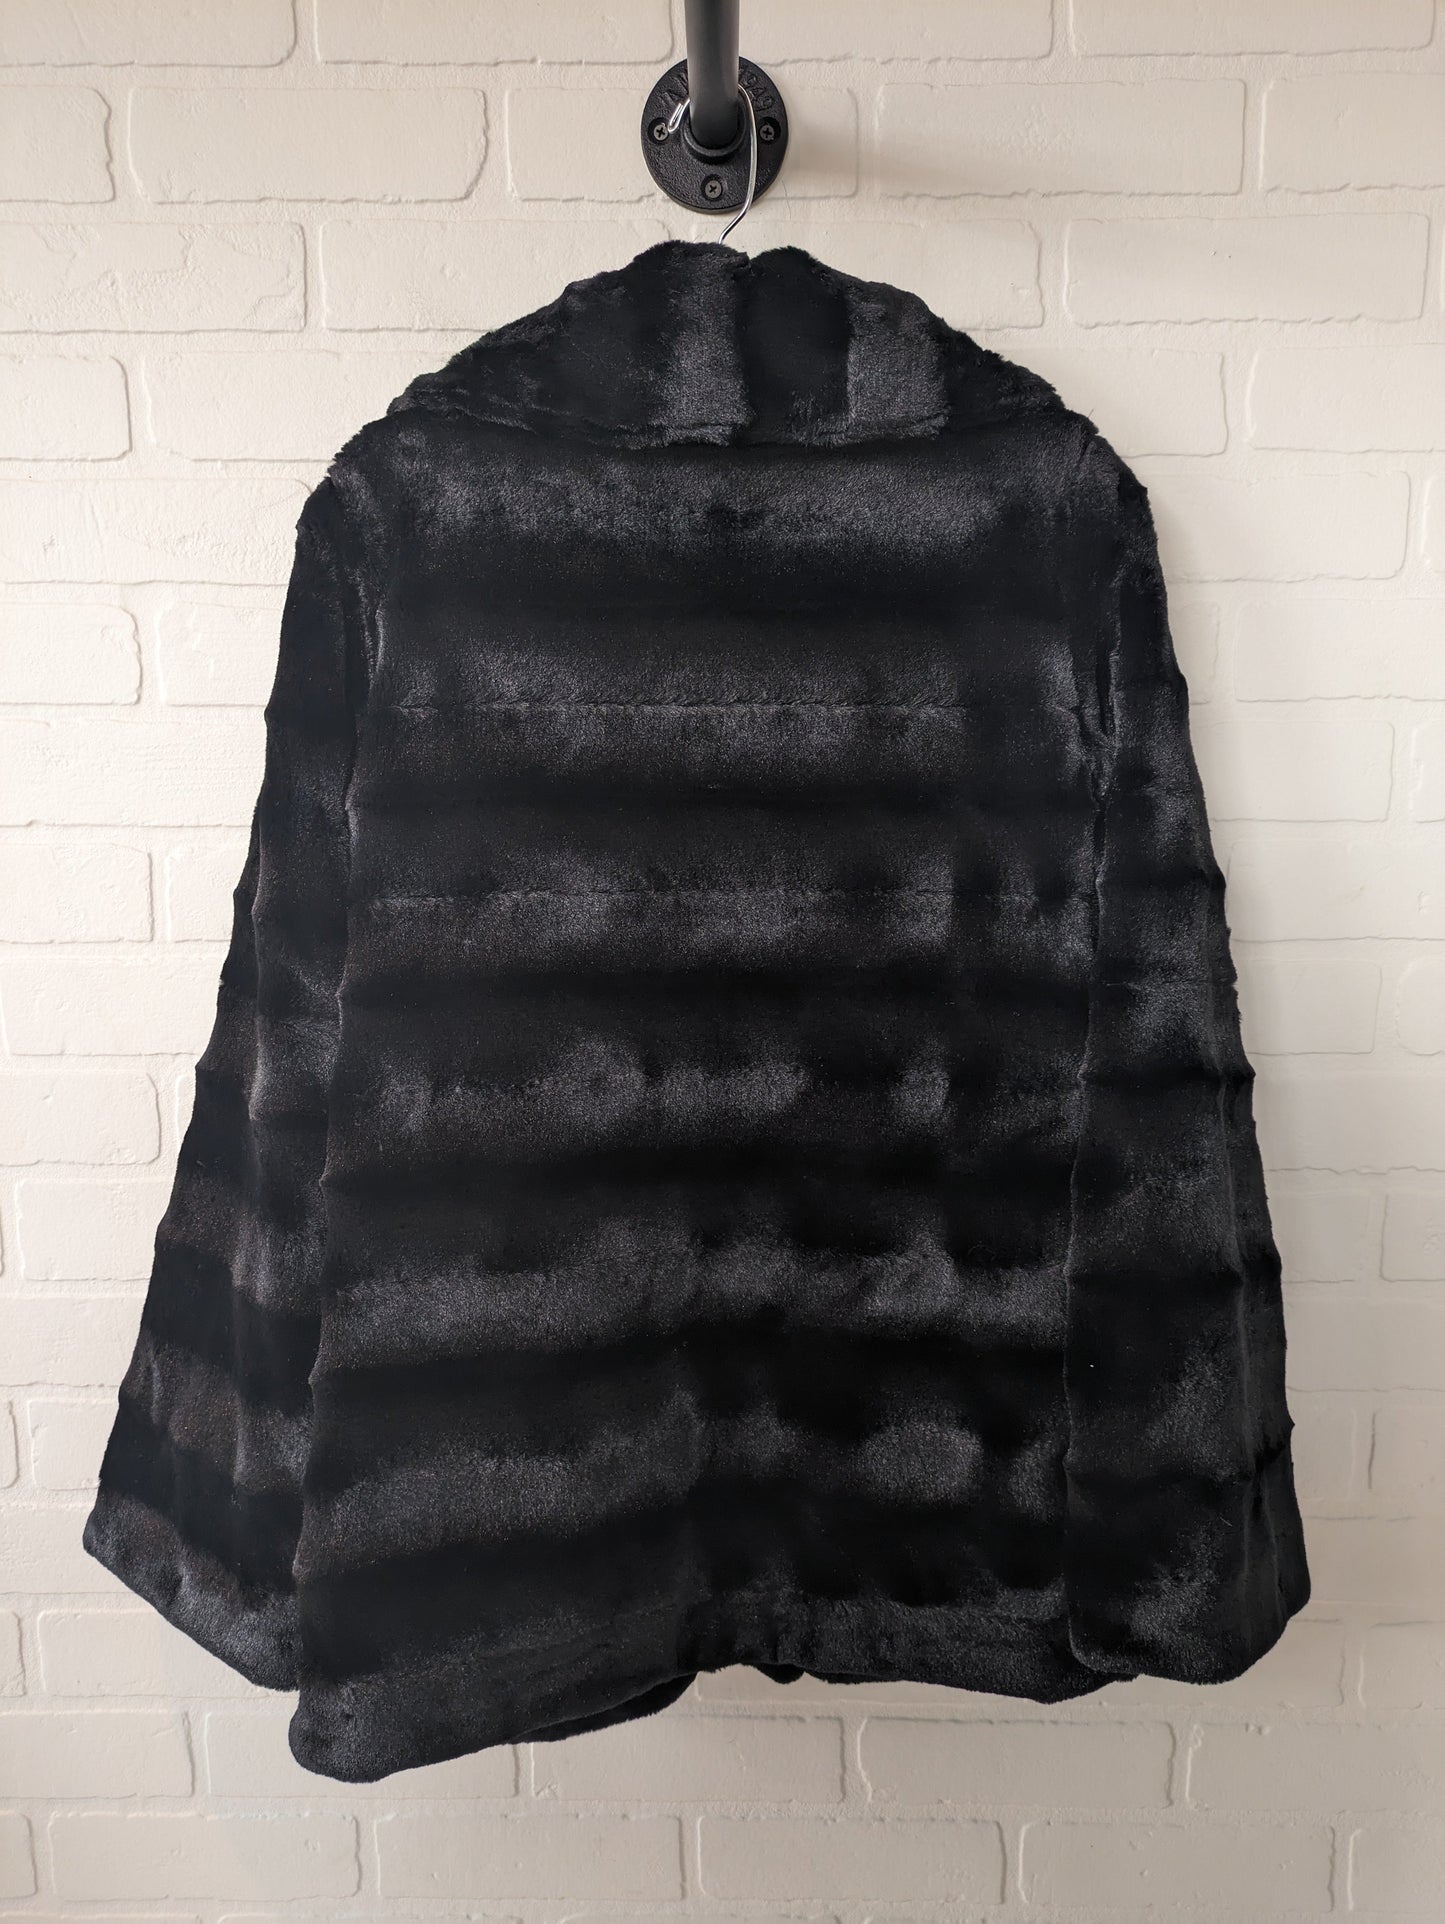 Coat Faux Fur & Sherpa By Dennis Basso Qvc  Size: Xxs